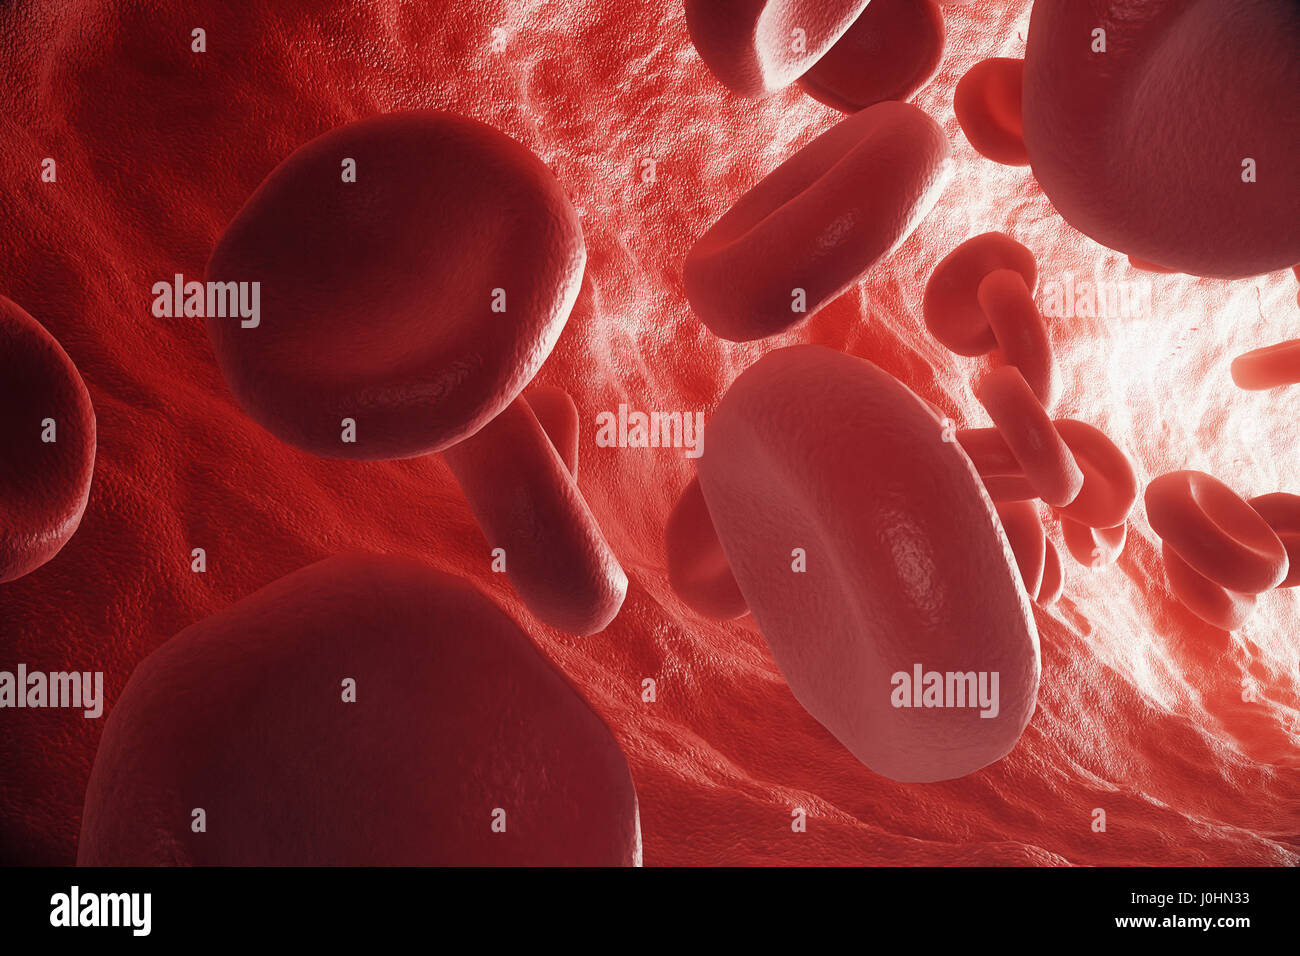 Les globules rouges en veine ou artère, à l'intérieur à l'intérieur d'un organisme vivant, 3D Rendering Banque D'Images